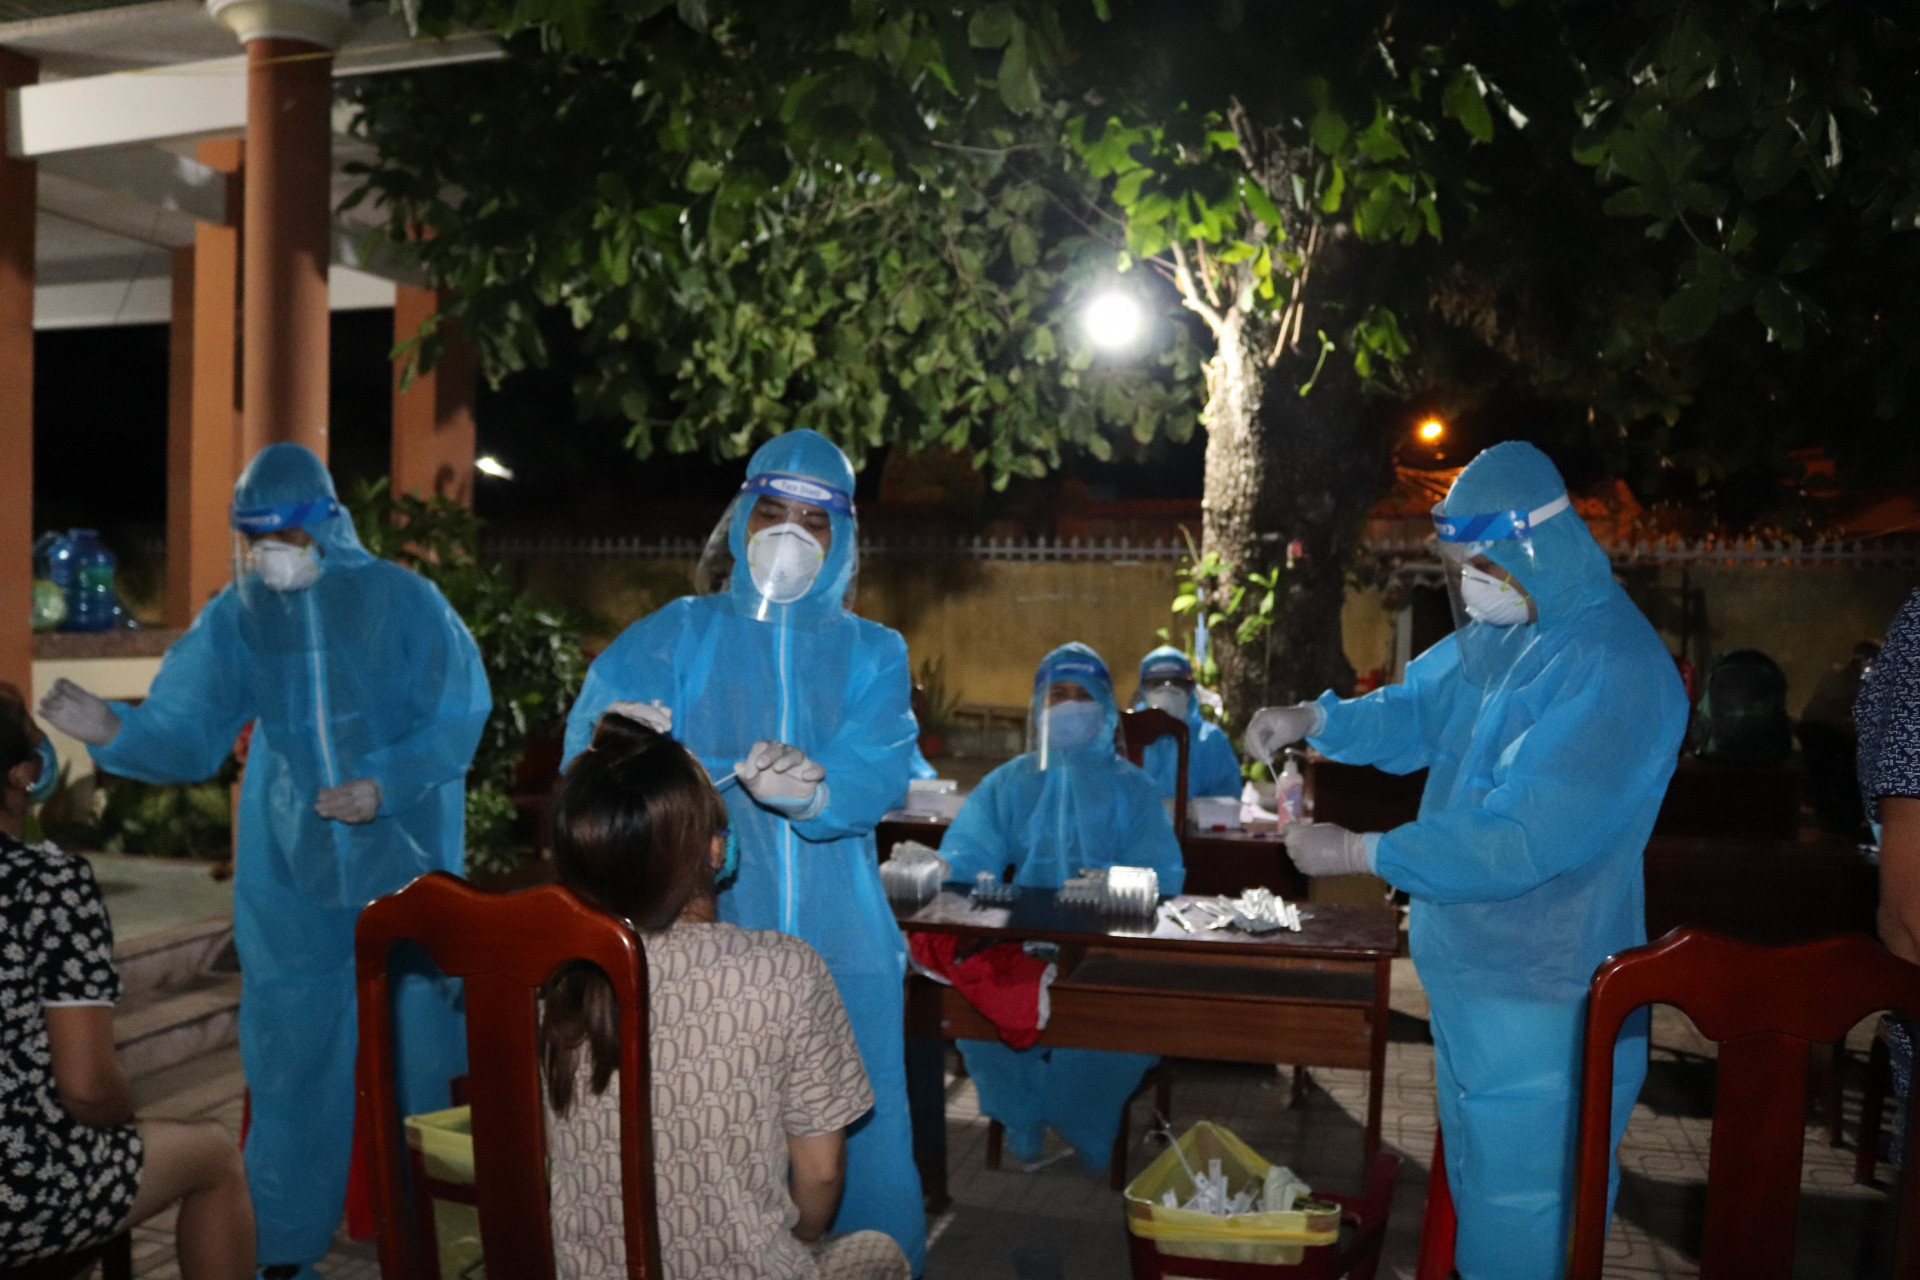 Trong đêm 8-7, gần 1.000 mẫu đã thực hiện, kết quả có 10 ca nghi nhiễm SARS-CoV-2; những người bị nghi nhiễm lập tức được thông báo chuẩn bị đi cách ly.